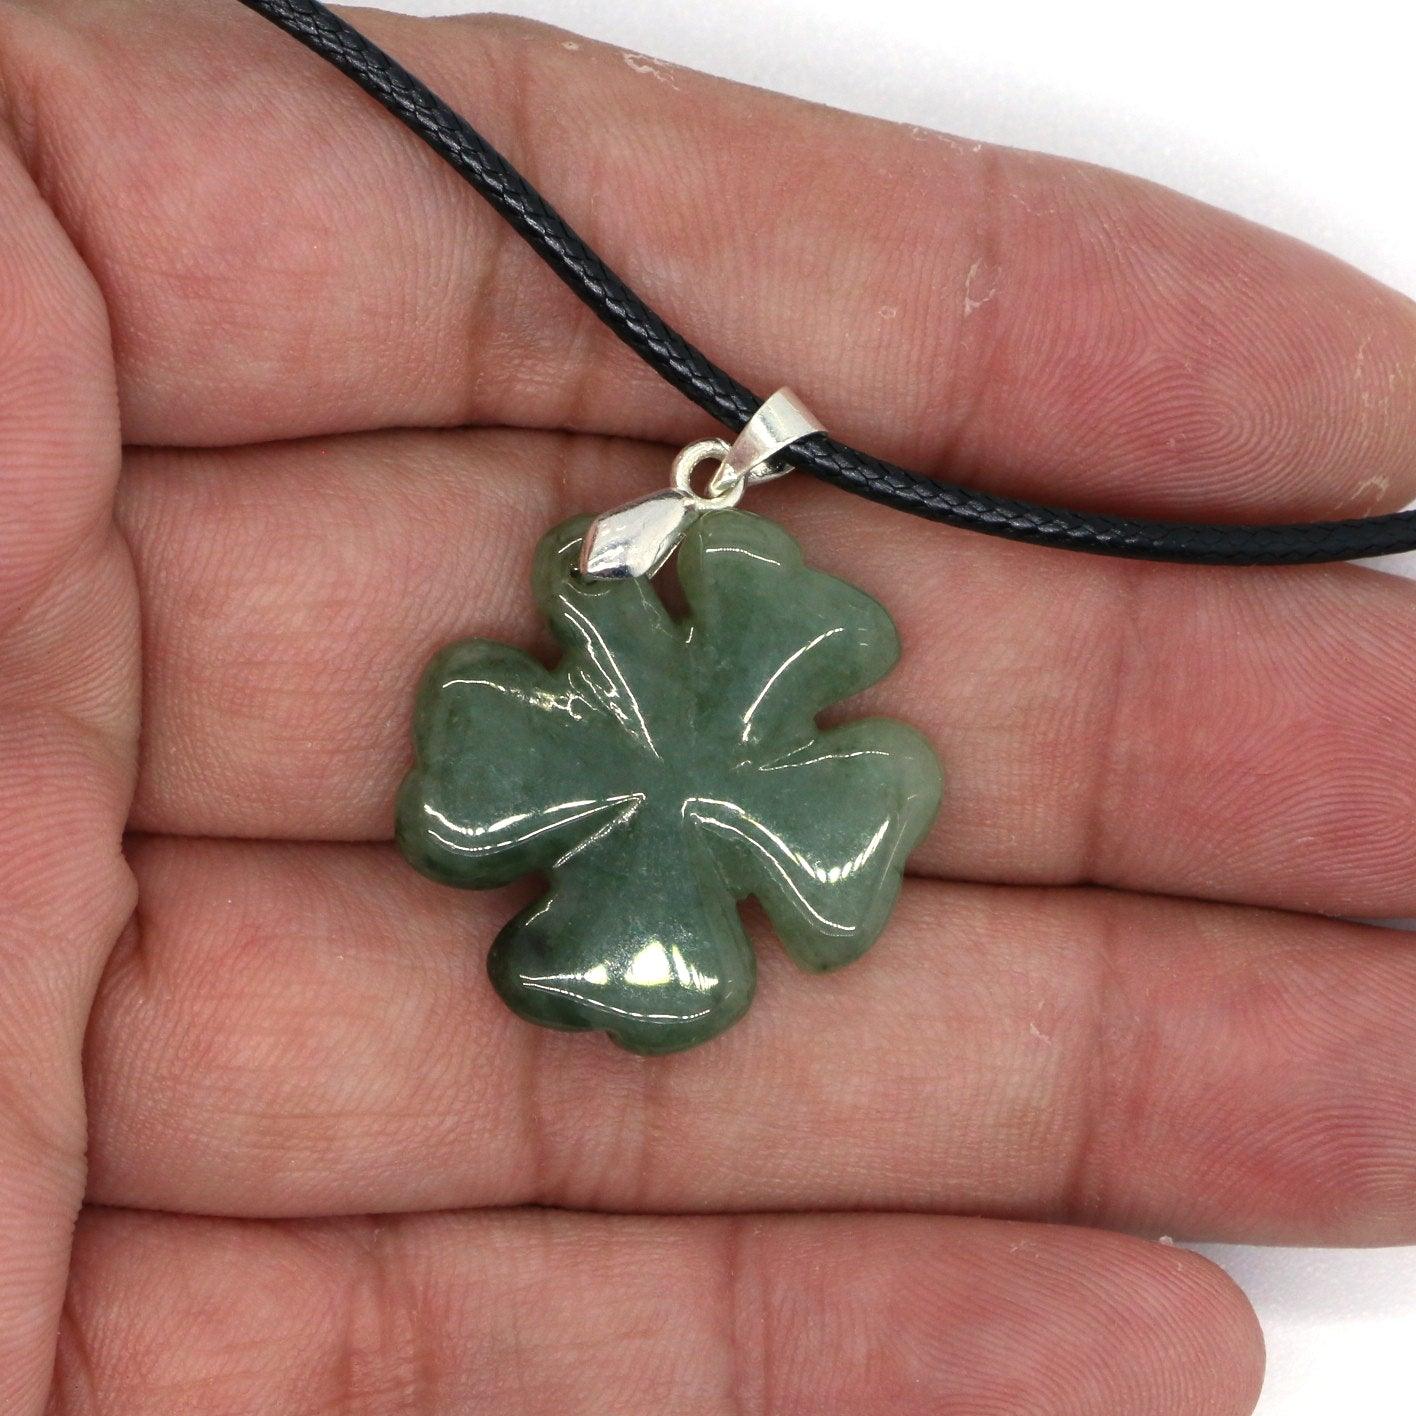 Type A Jadeite Jade Pendants Four-leaf clover Series - Jade-collector.com